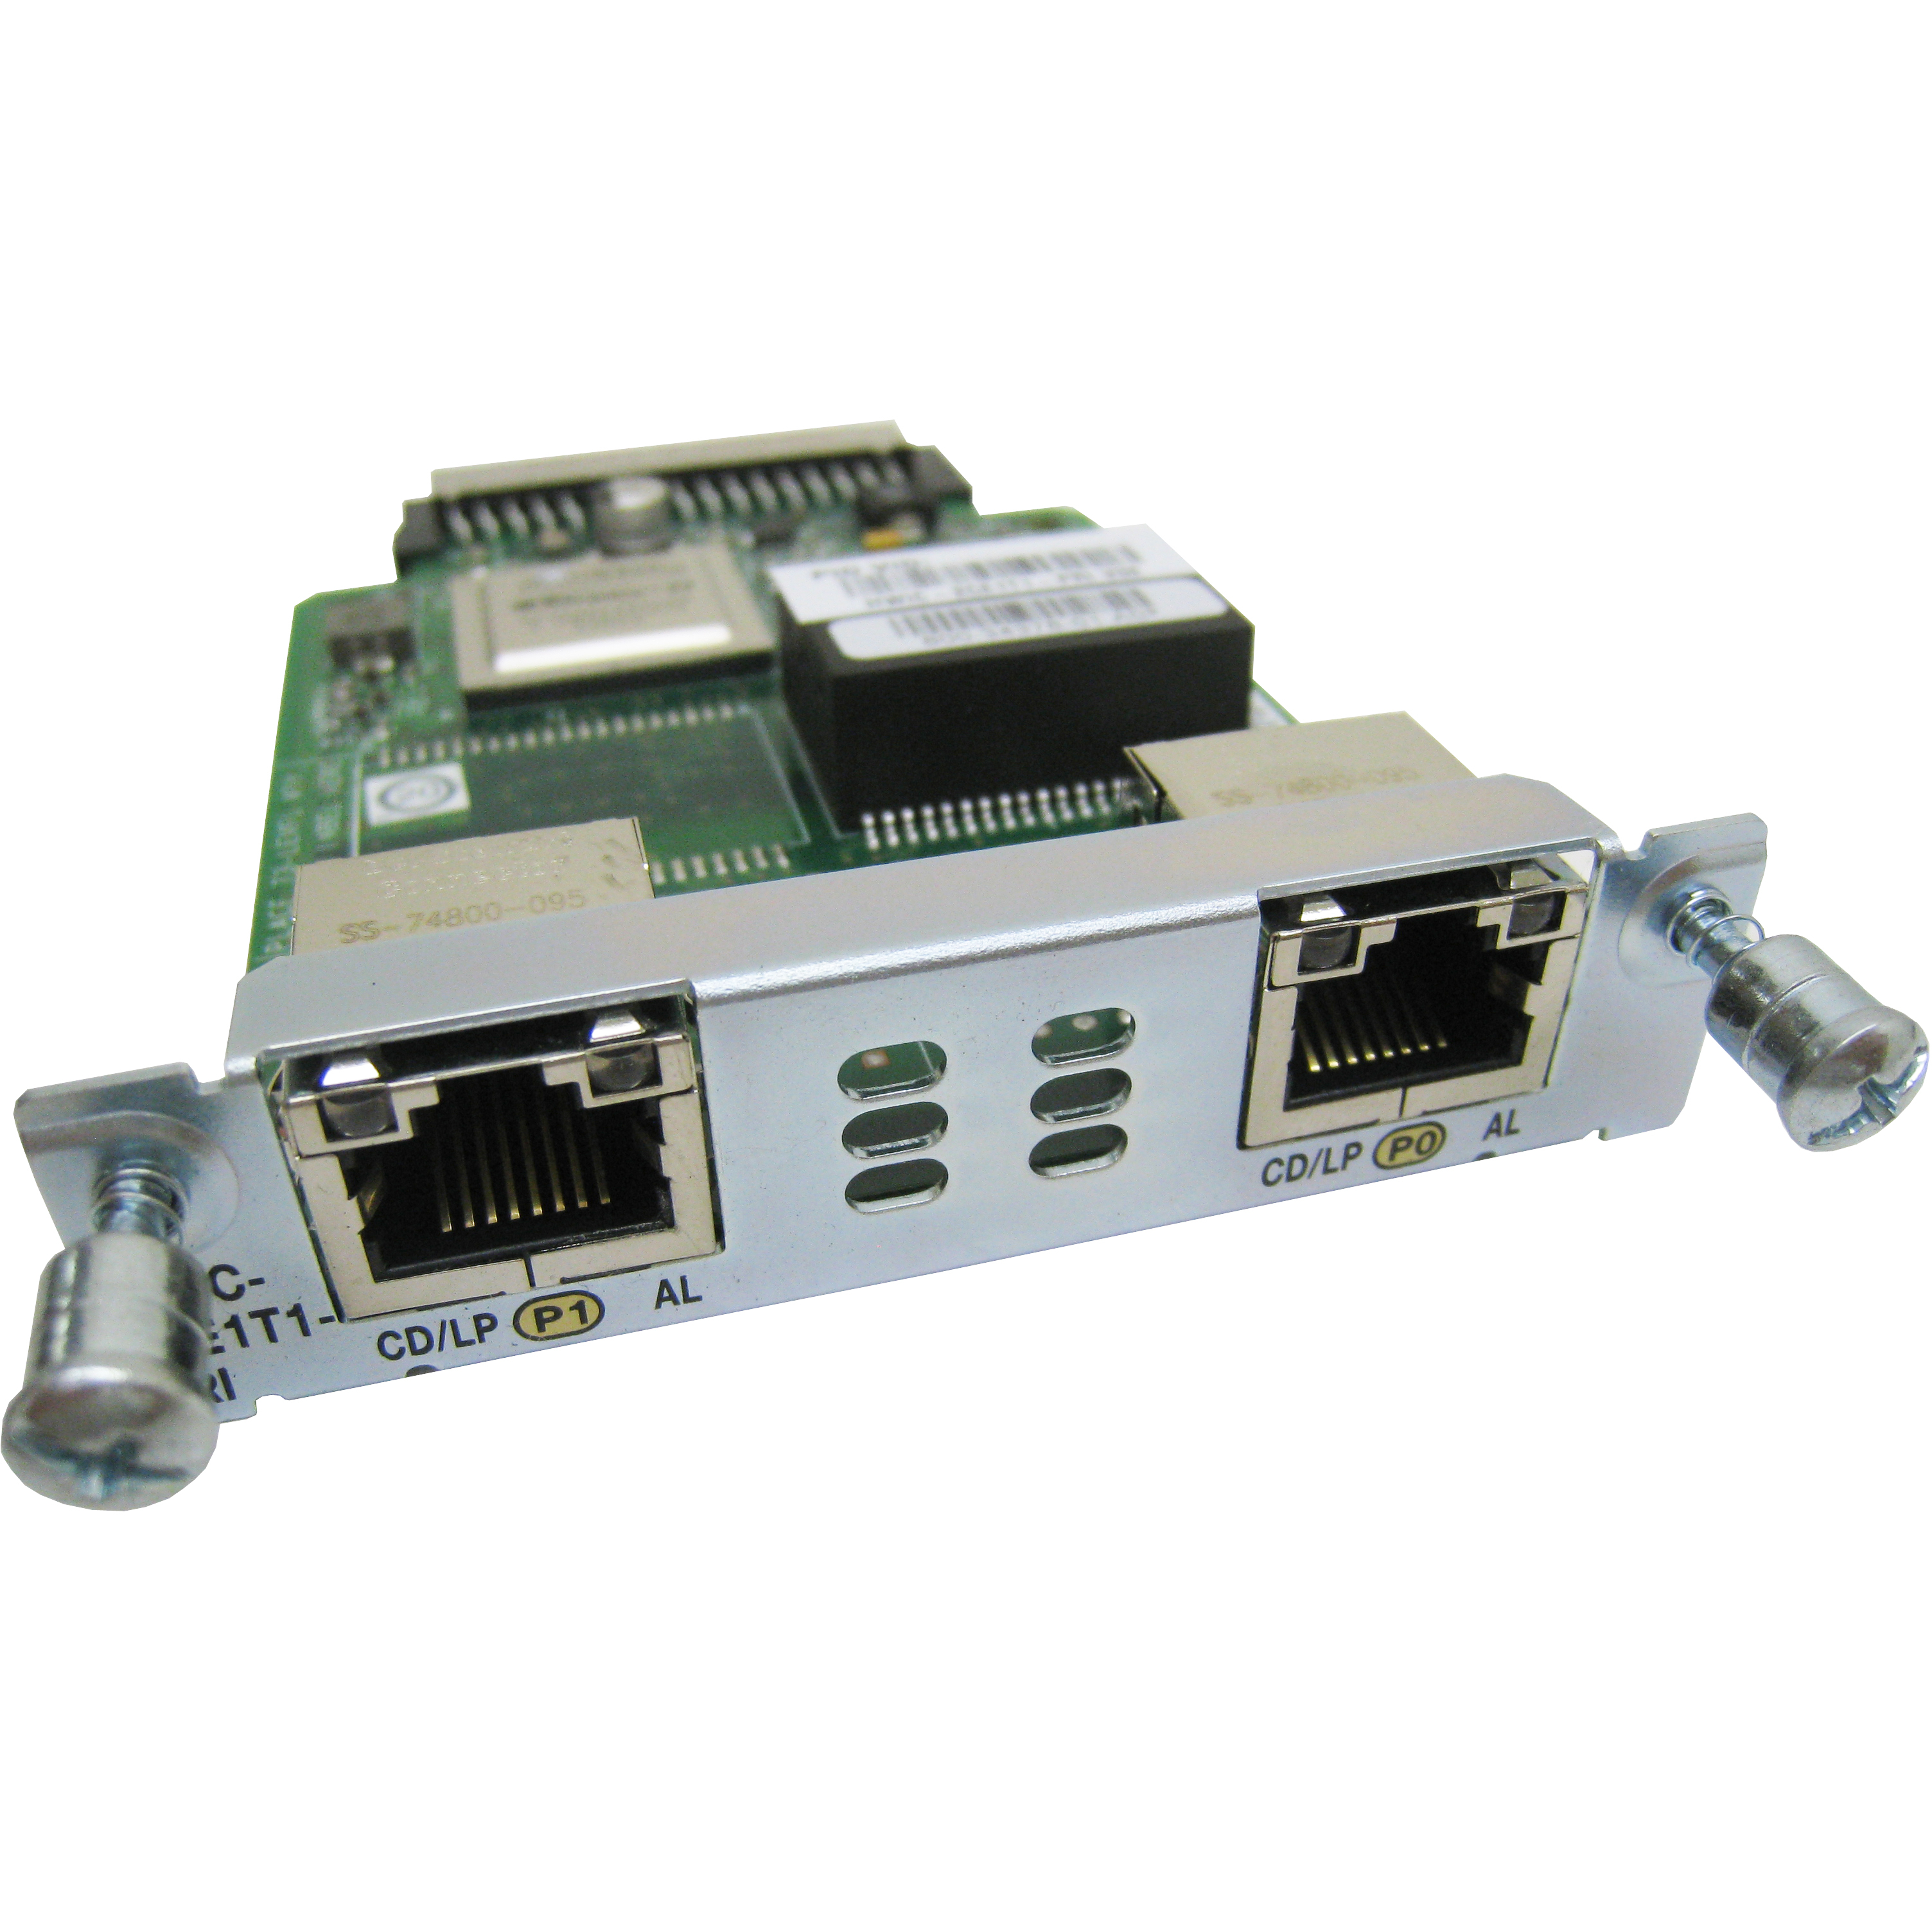 Cisco HWIC-2CE1T1-PRI